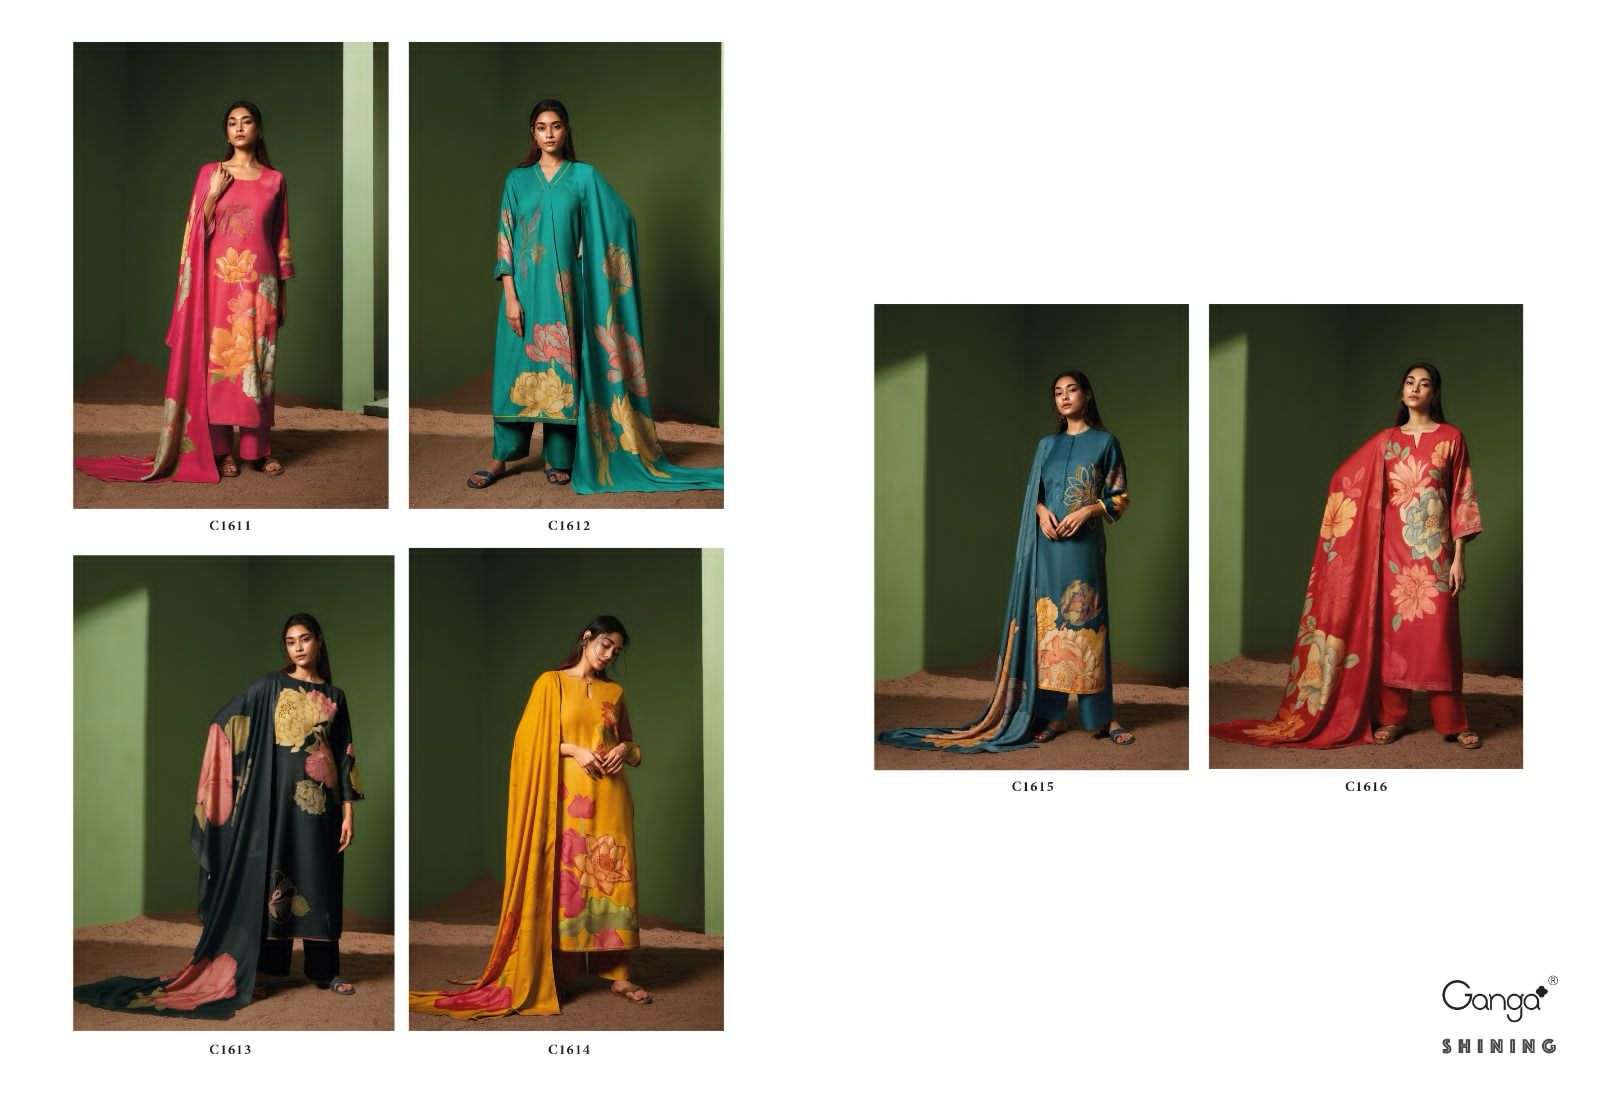 ganga shining 1611-1616 series designer wedding wear pakistani salwar kameez wholesaler surat gujarat